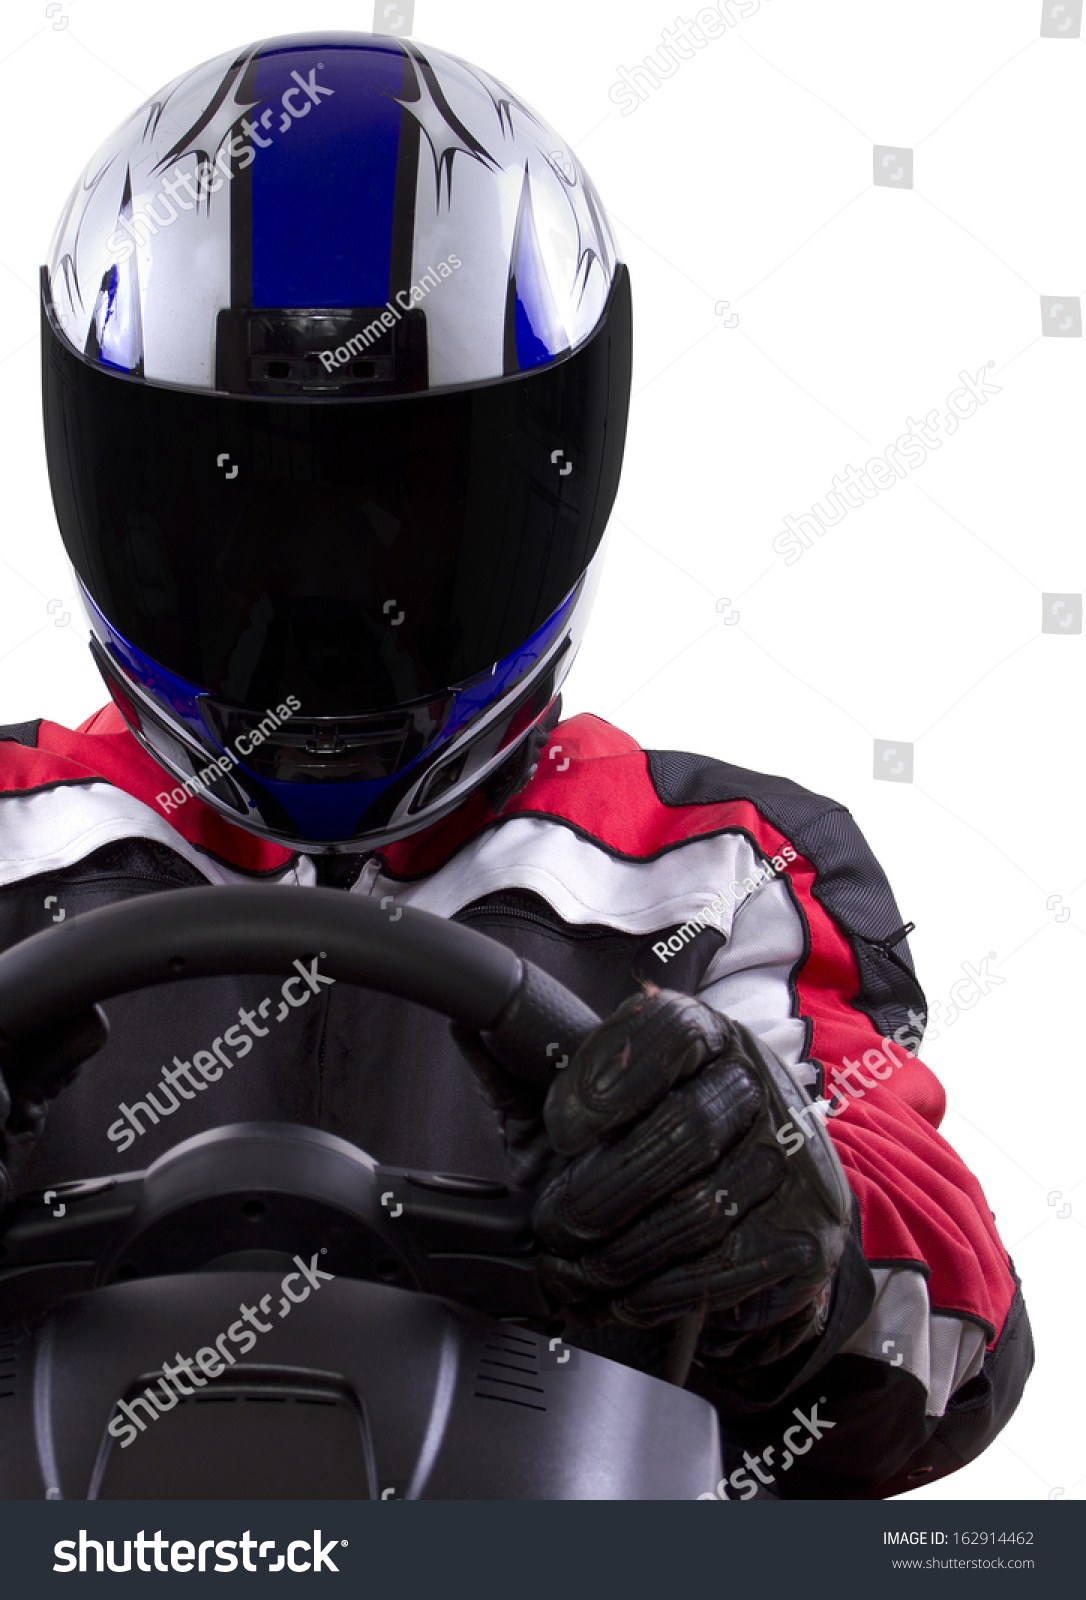 racerwearing red racing suit and blue helmet on a steering wheel #162914462